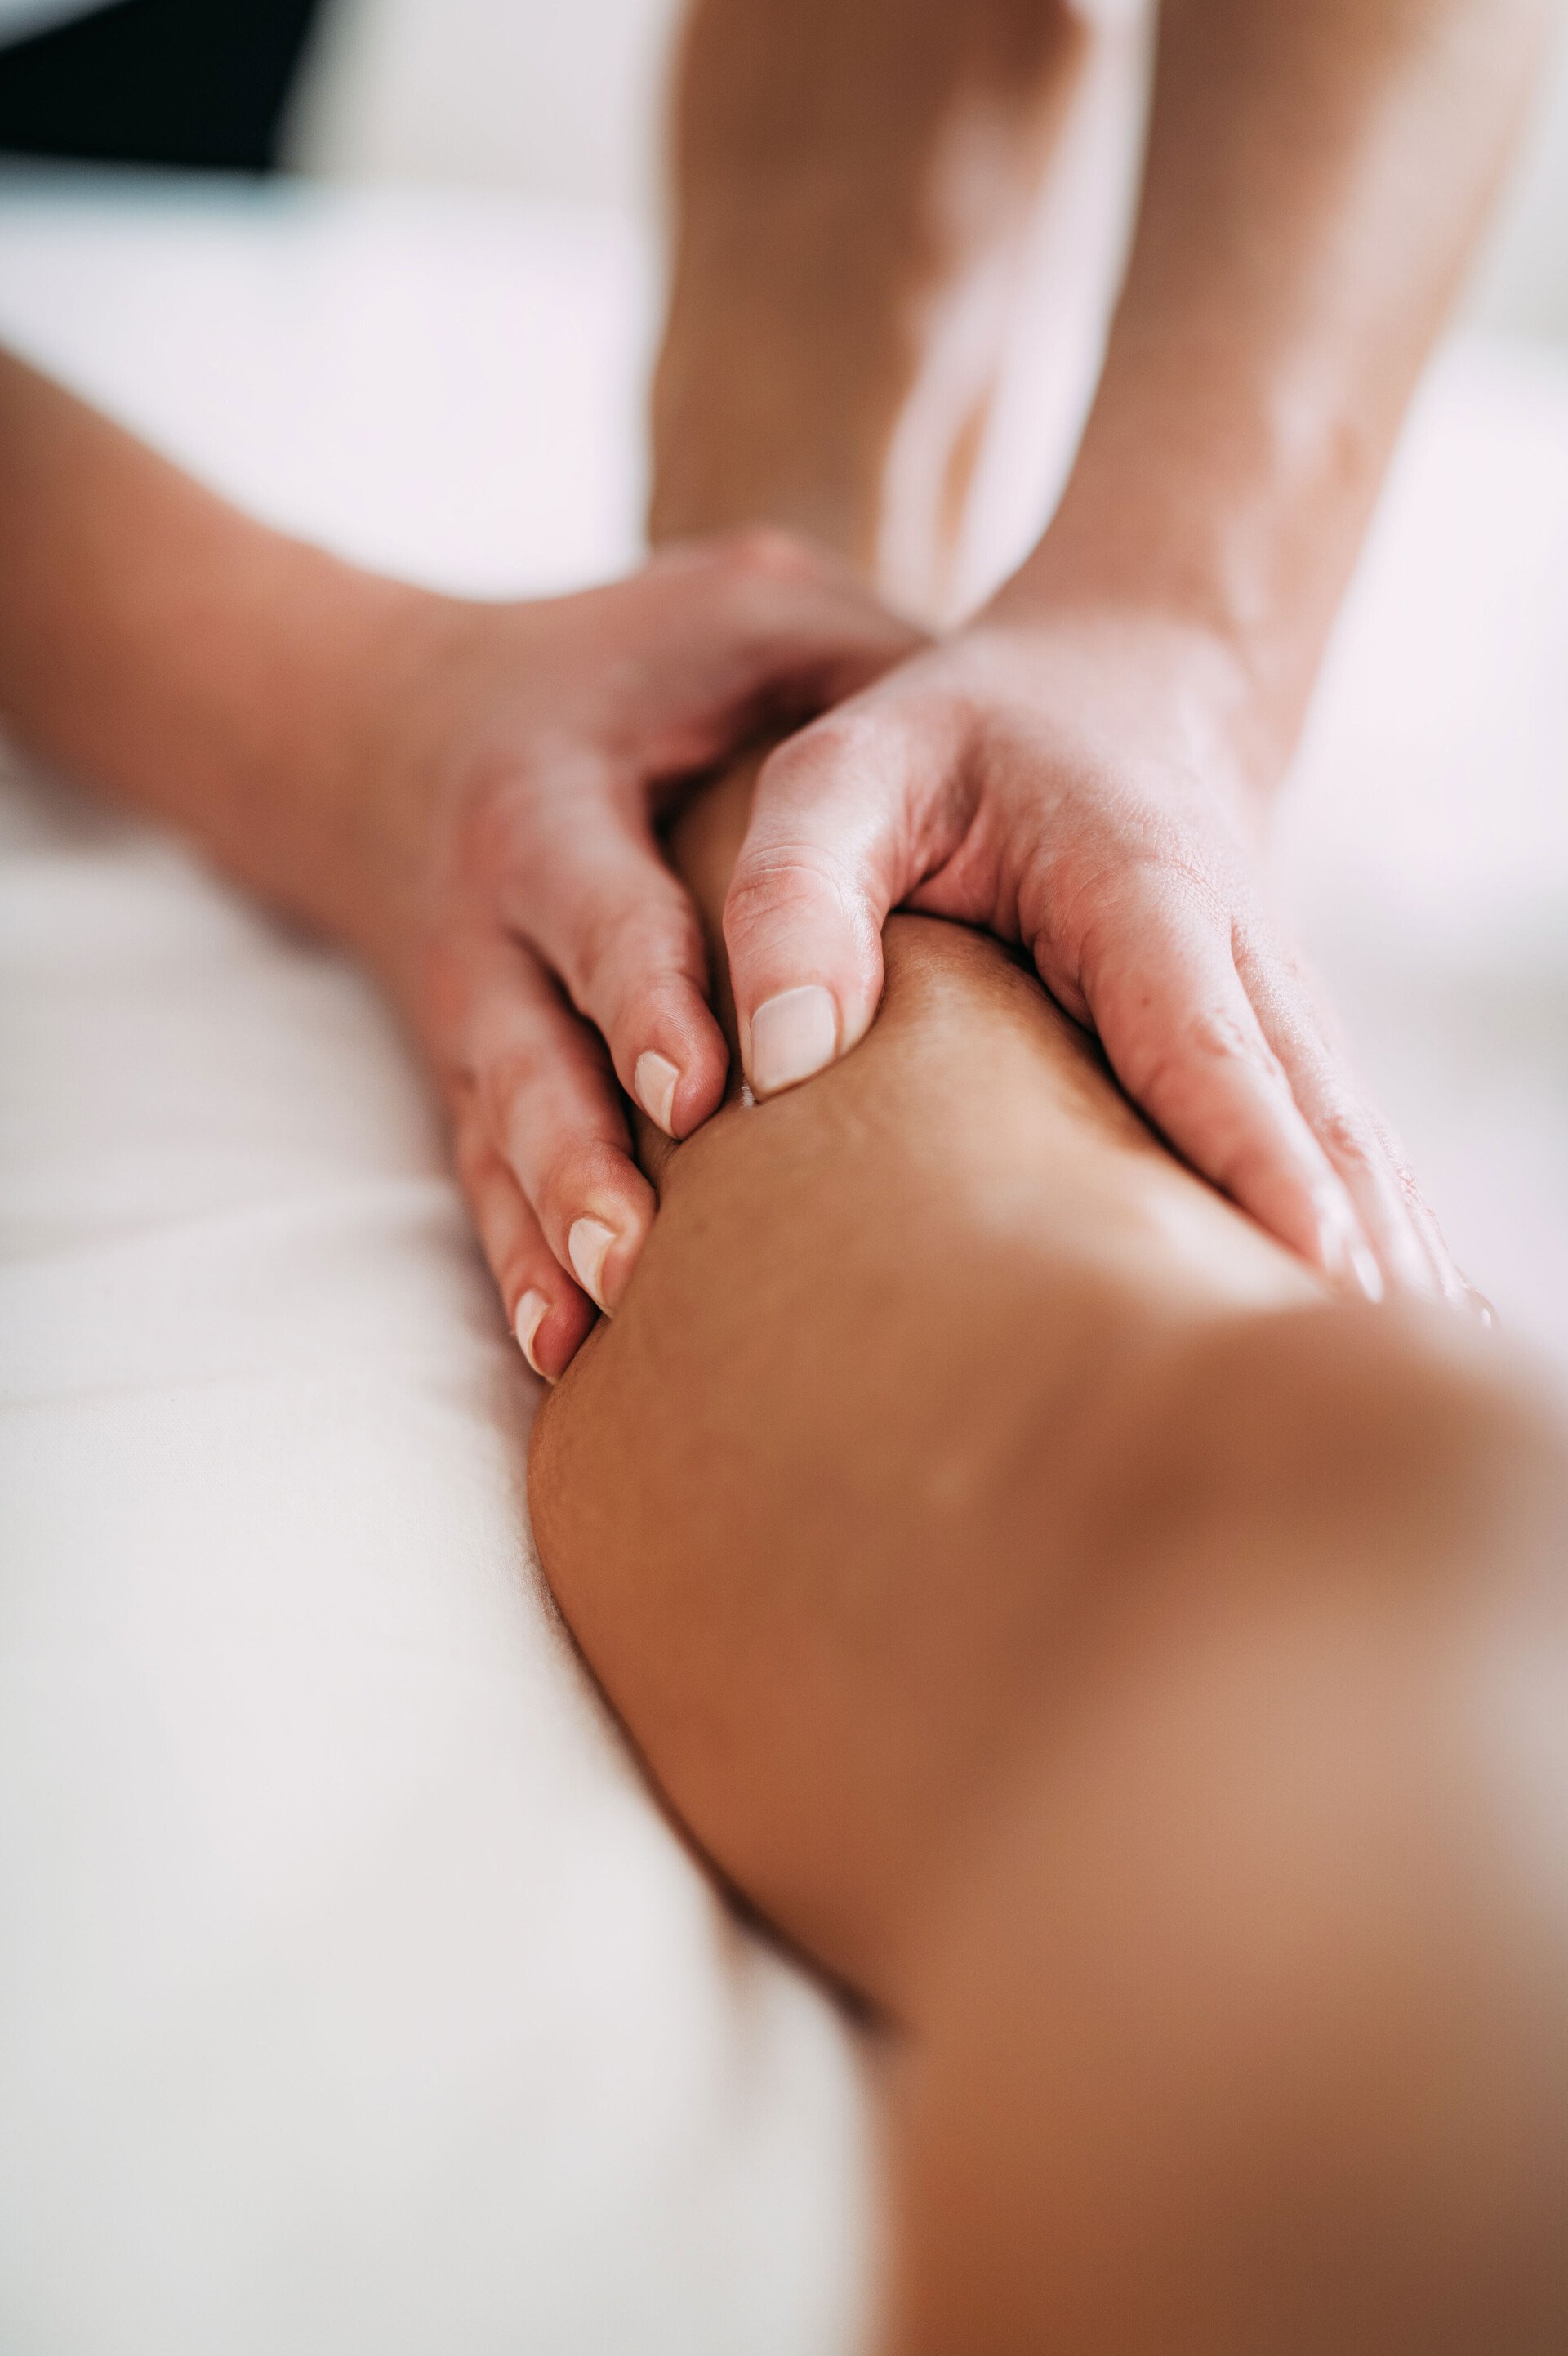 Hautprodukte können auch zur Massage eingesetzt werden, wie dieses Bild von zwei massierenden Händen auf einer Wade zeigt.